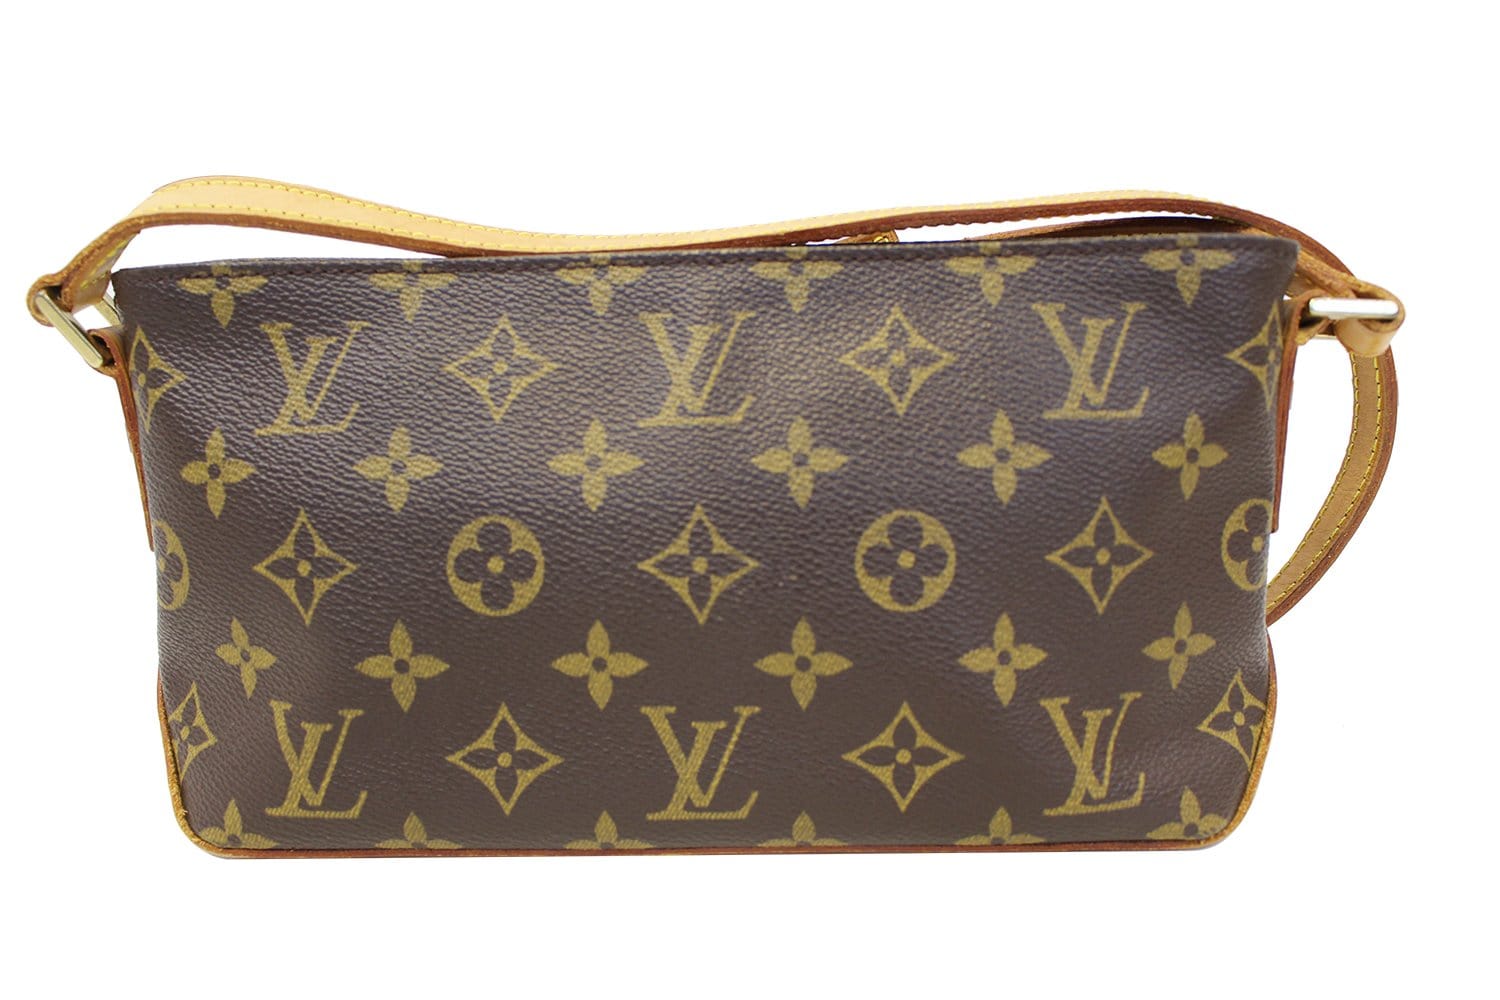 Lot 179 - A Louis Vuitton monogrammed Trotteur cross